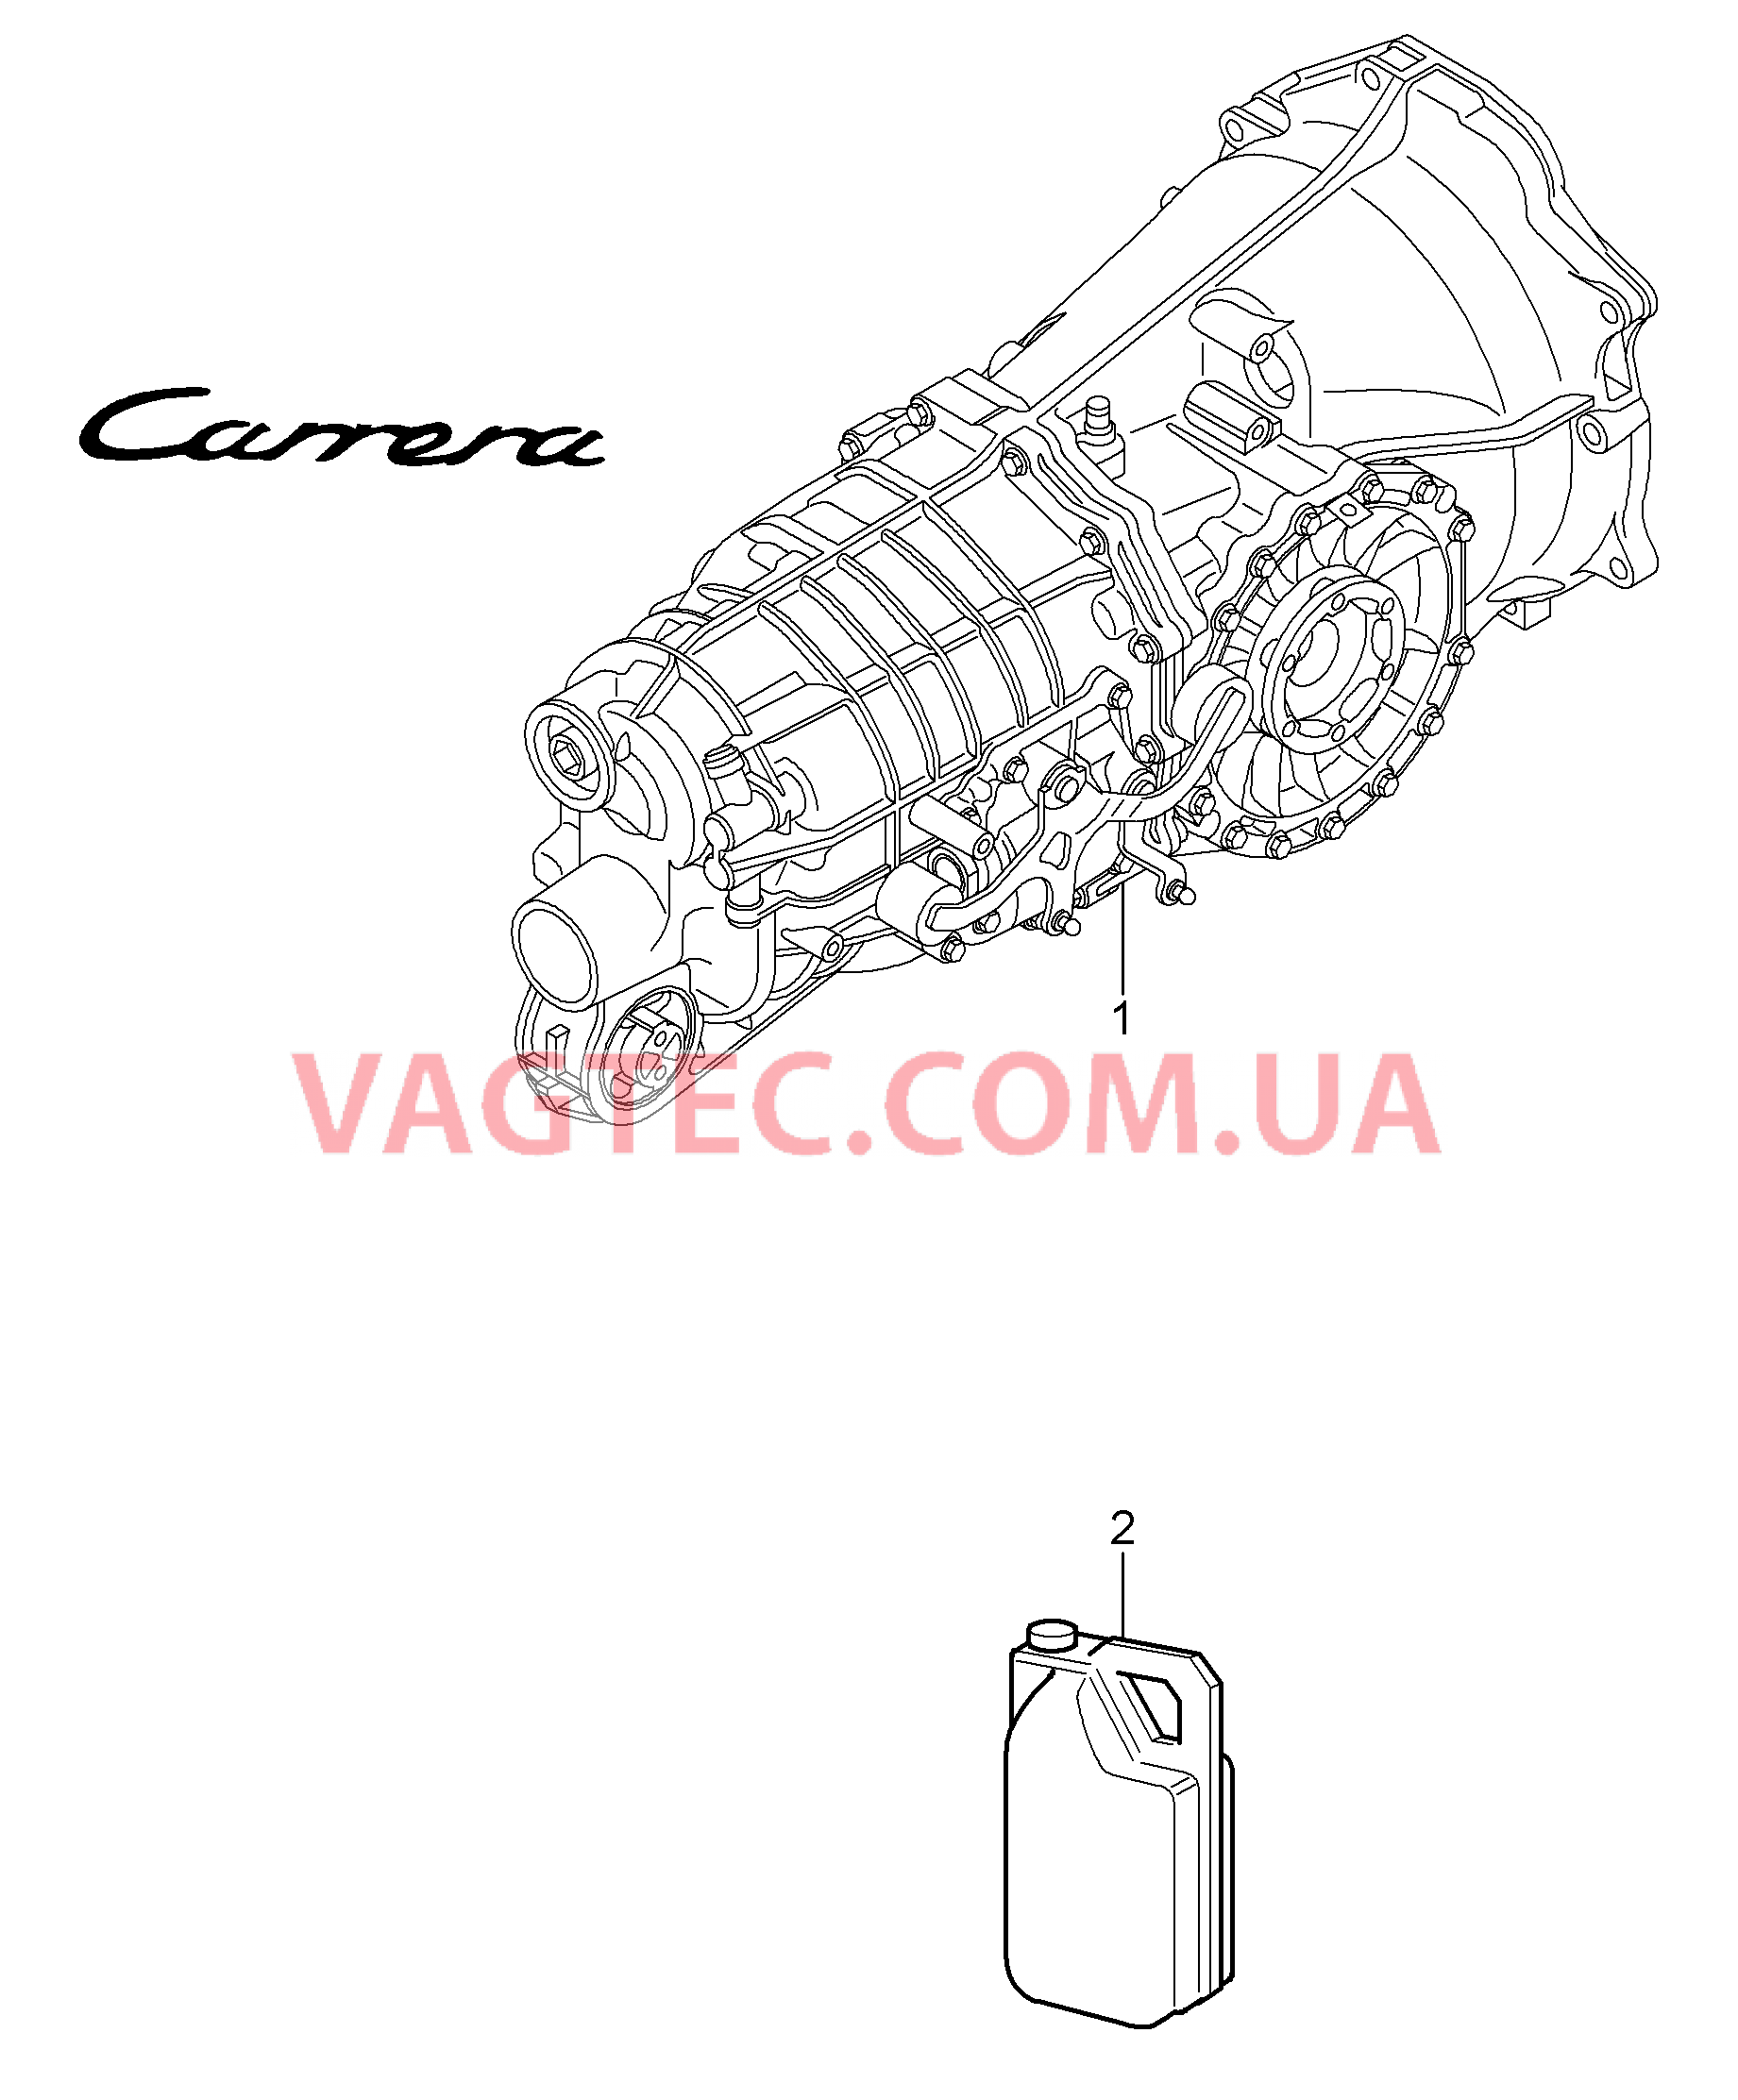 302-000 Мкпп, Заменная коробка передач
						
						G97.01, G97.31 для PORSCHE 911.Carrera 2005-2008